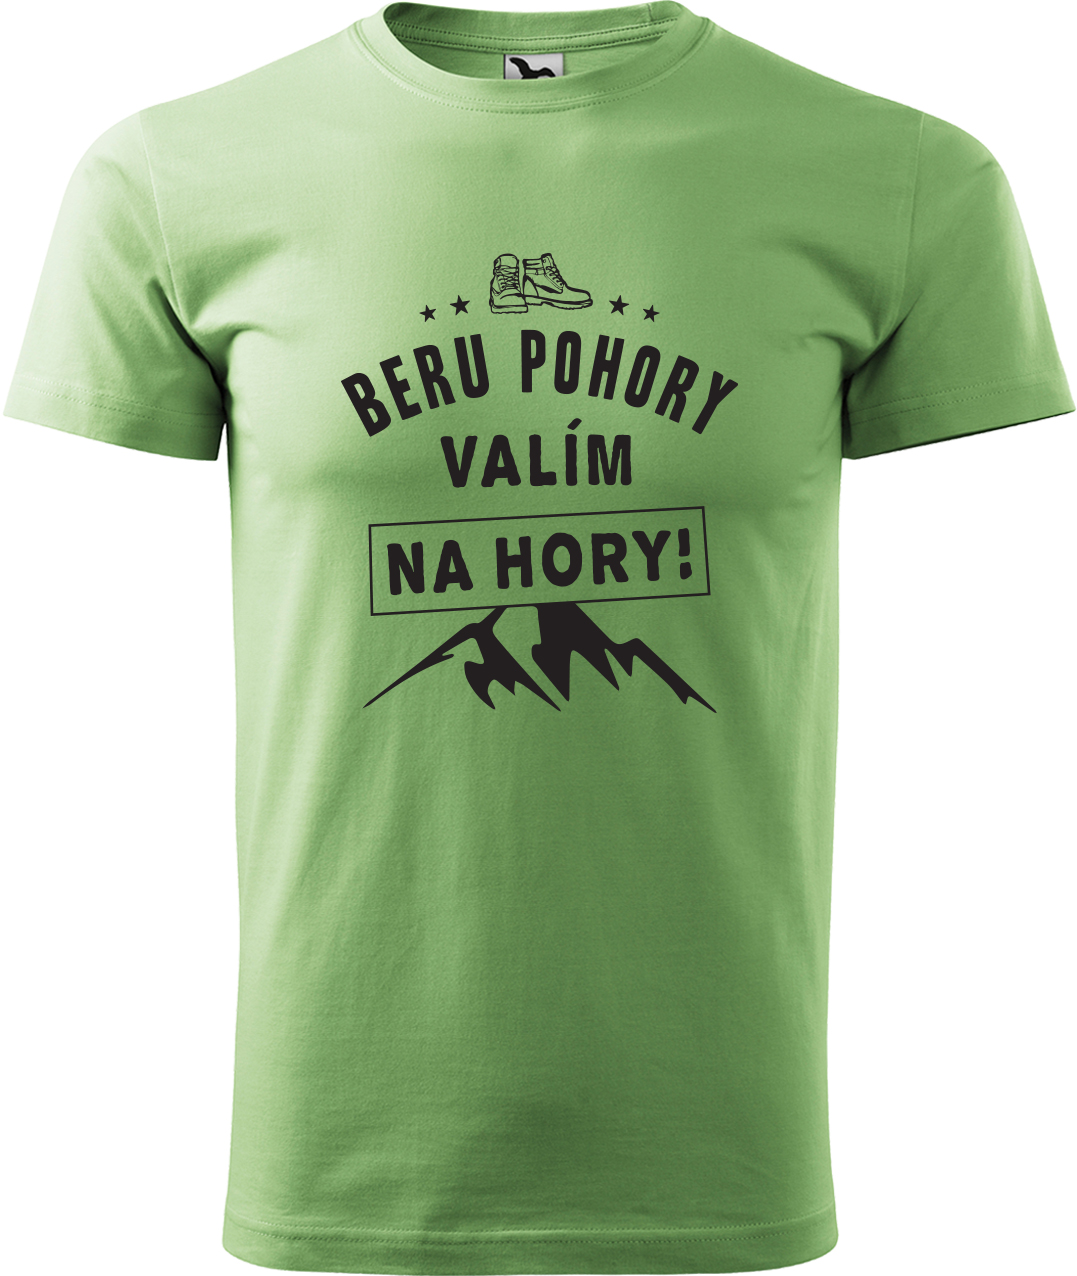 Pánské tričko na hory - Beru pohory, valím na hory Velikost: 2XL, Barva: Trávově zelená (39), Střih: pánský